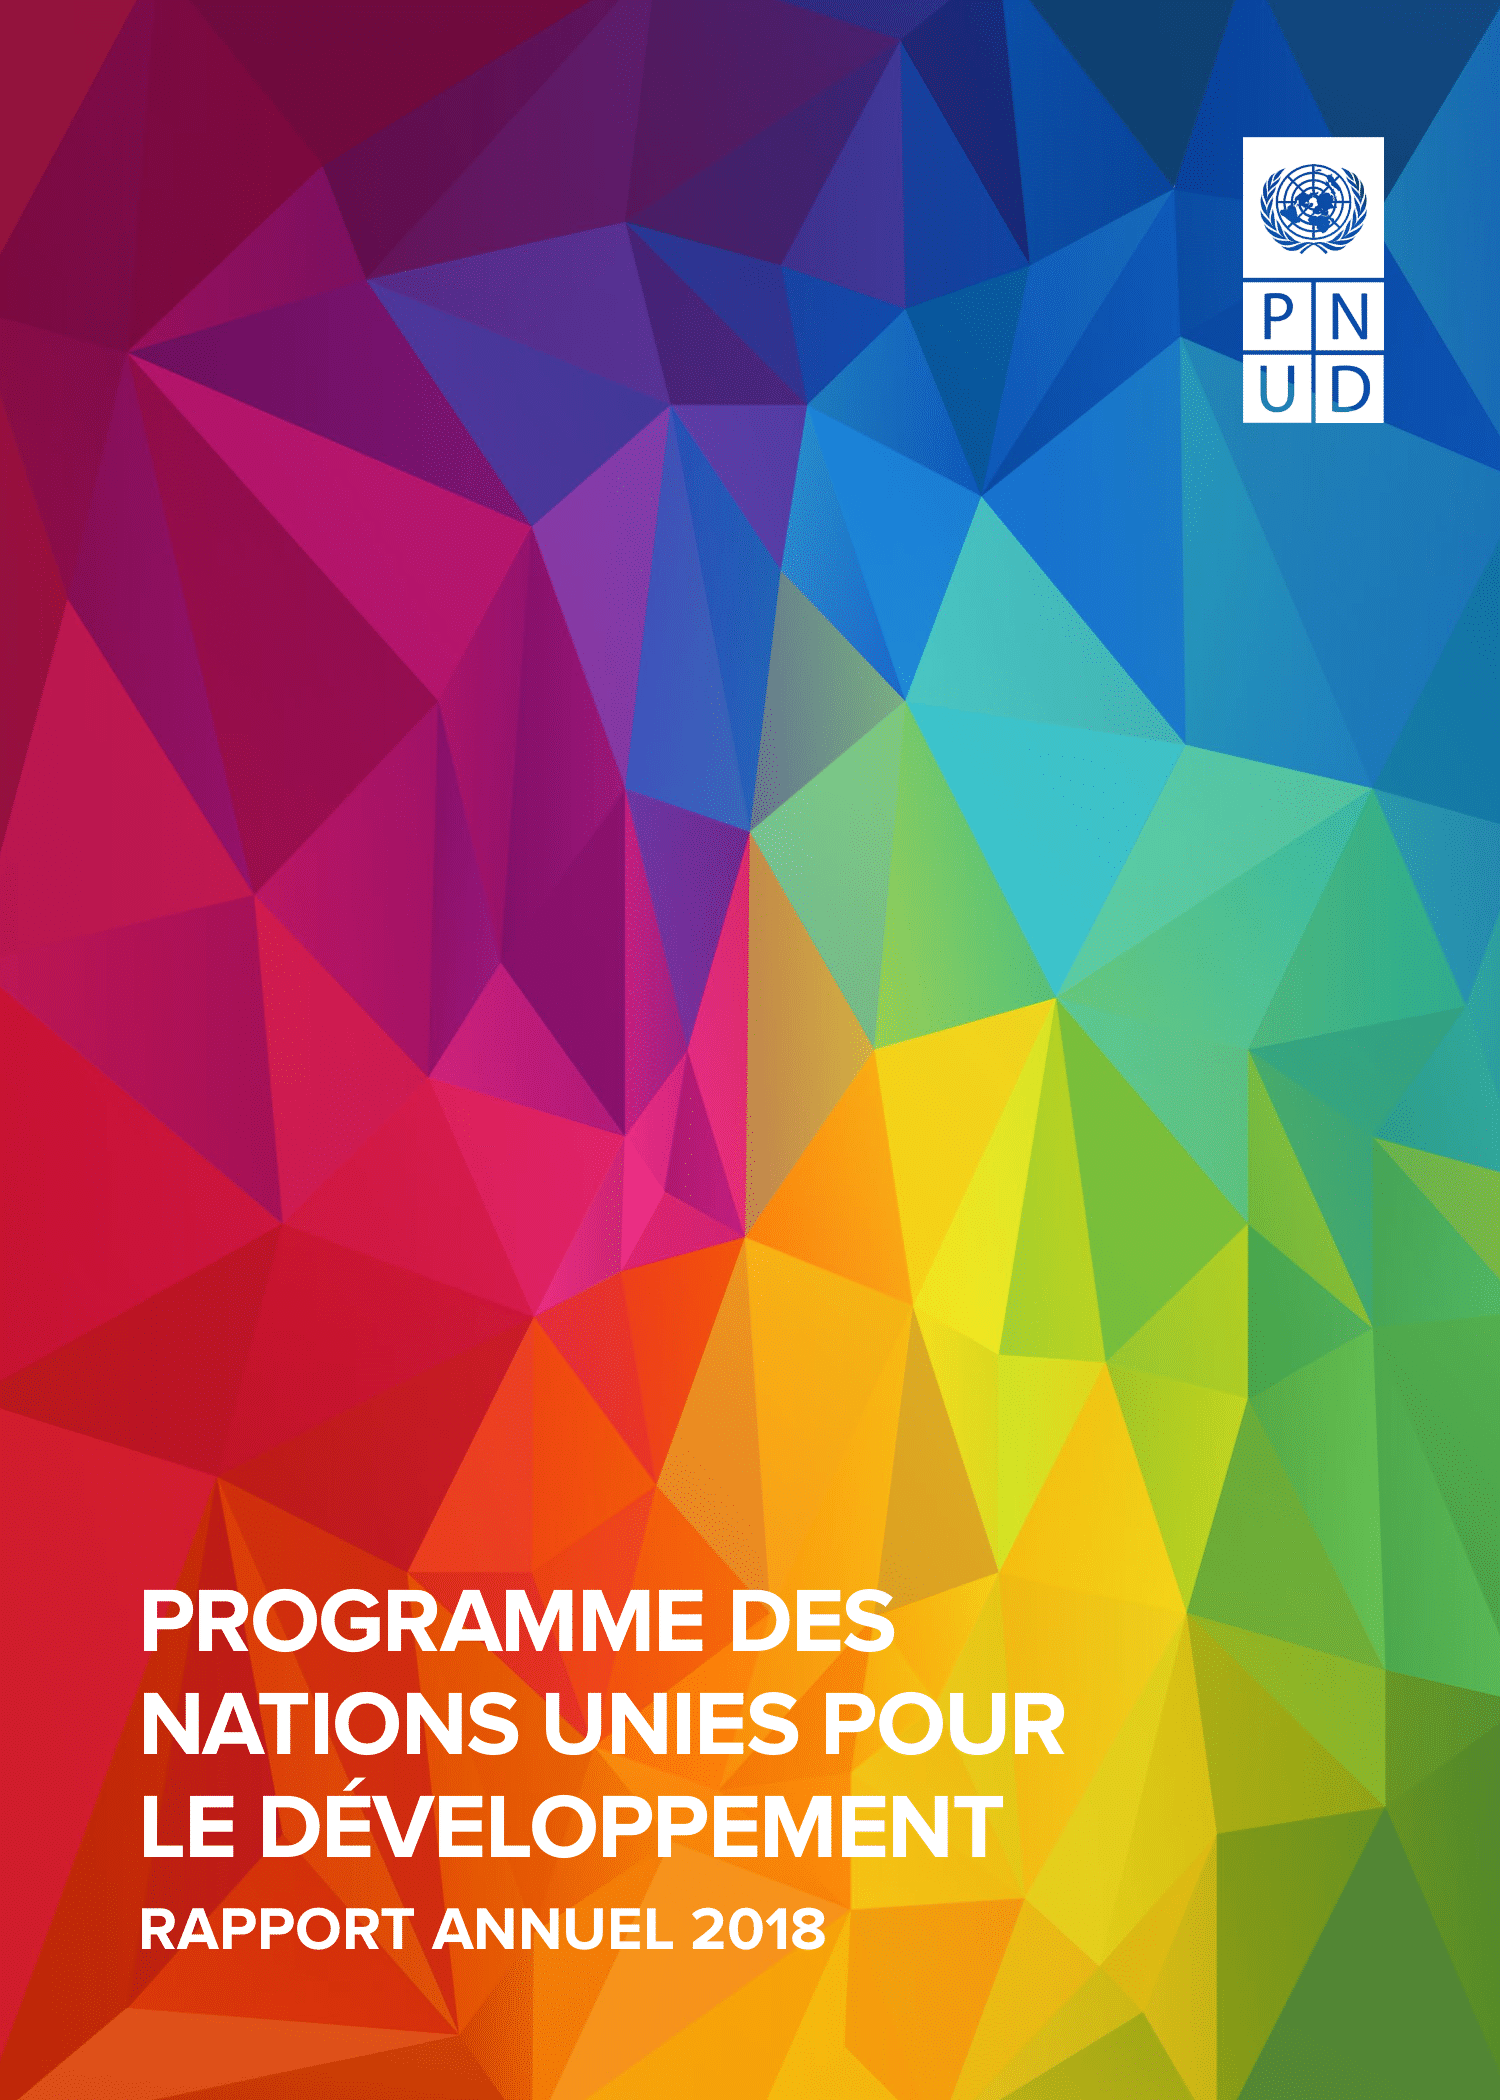 UNDP Annual Report cover